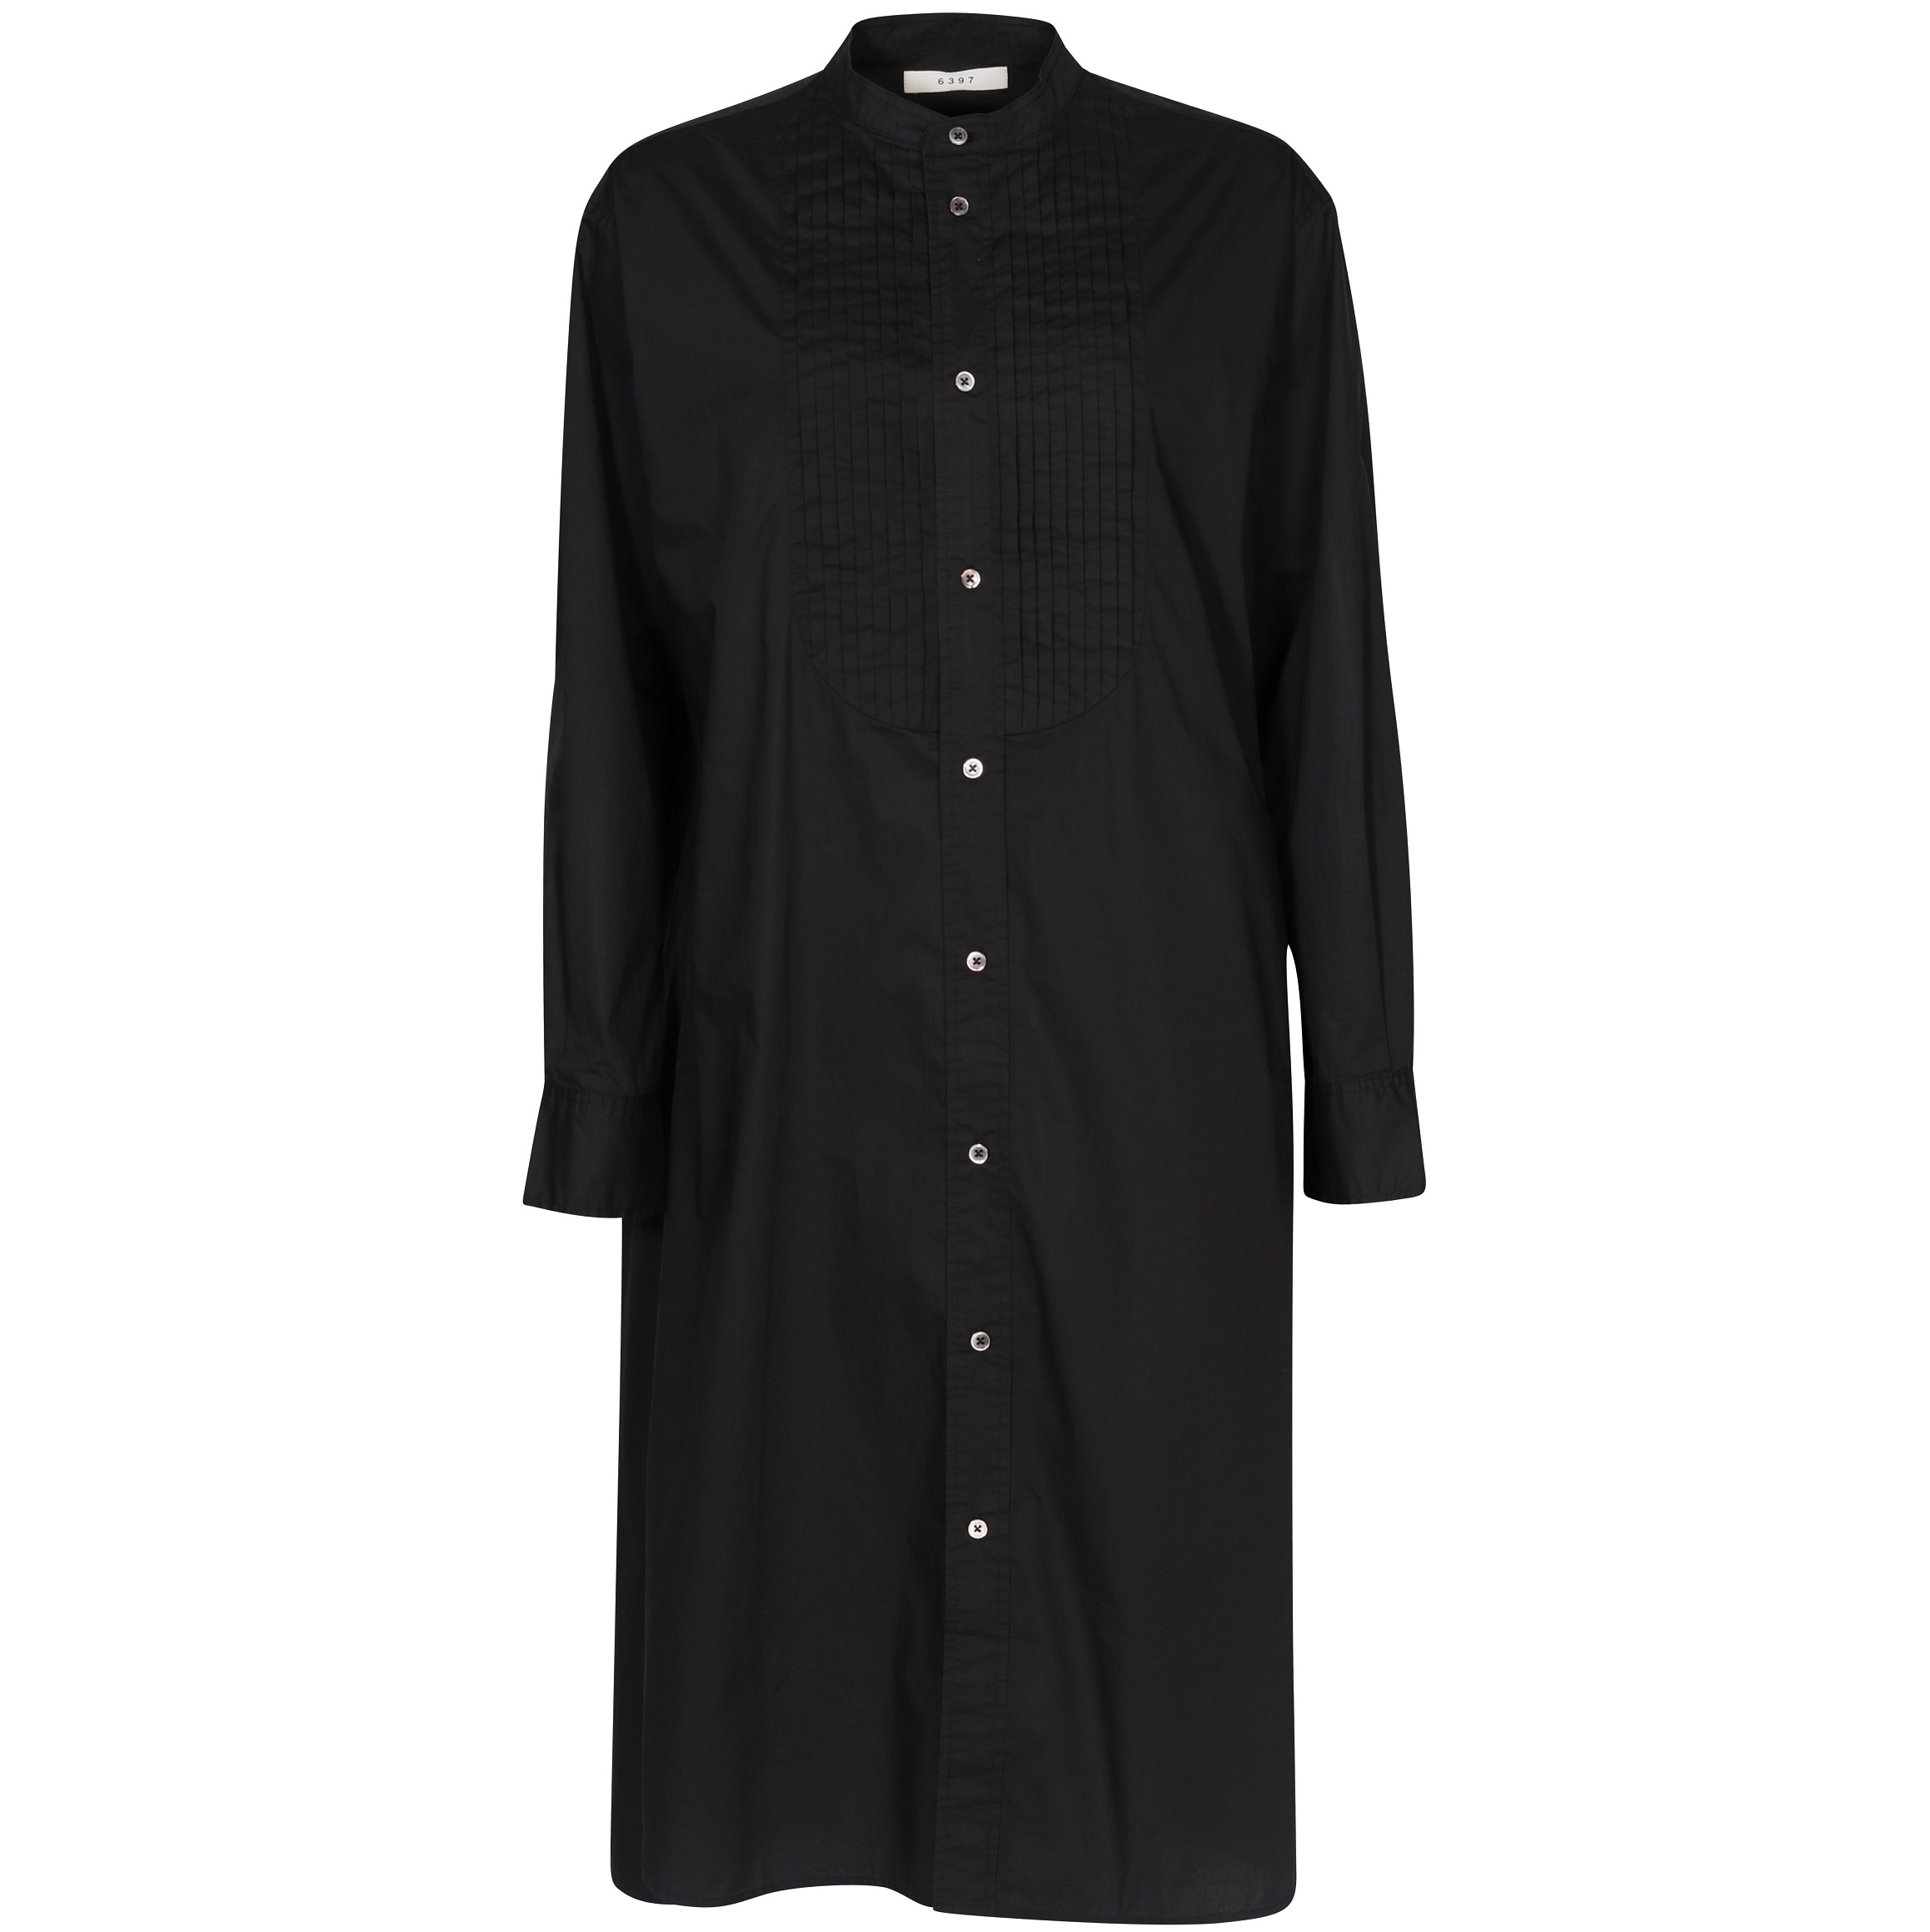 6397 Tuxedo Shirt Dress in Black S